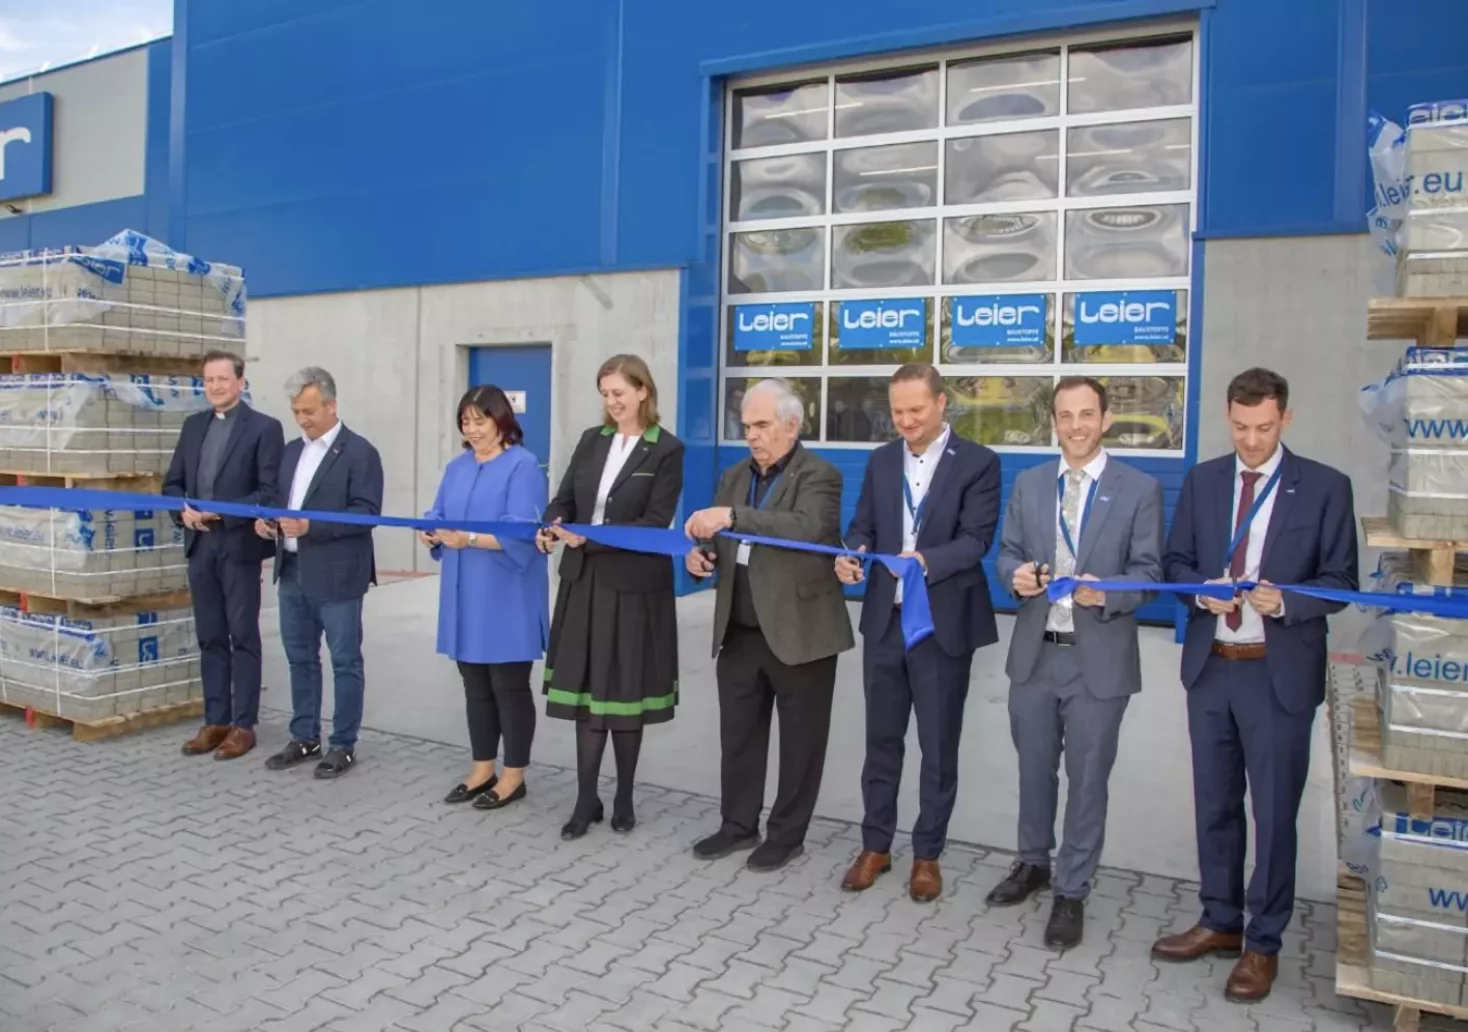 Foto auf 5min.at zeigt die Eröffnung des Leier Betonwerkes in Kirchbach.